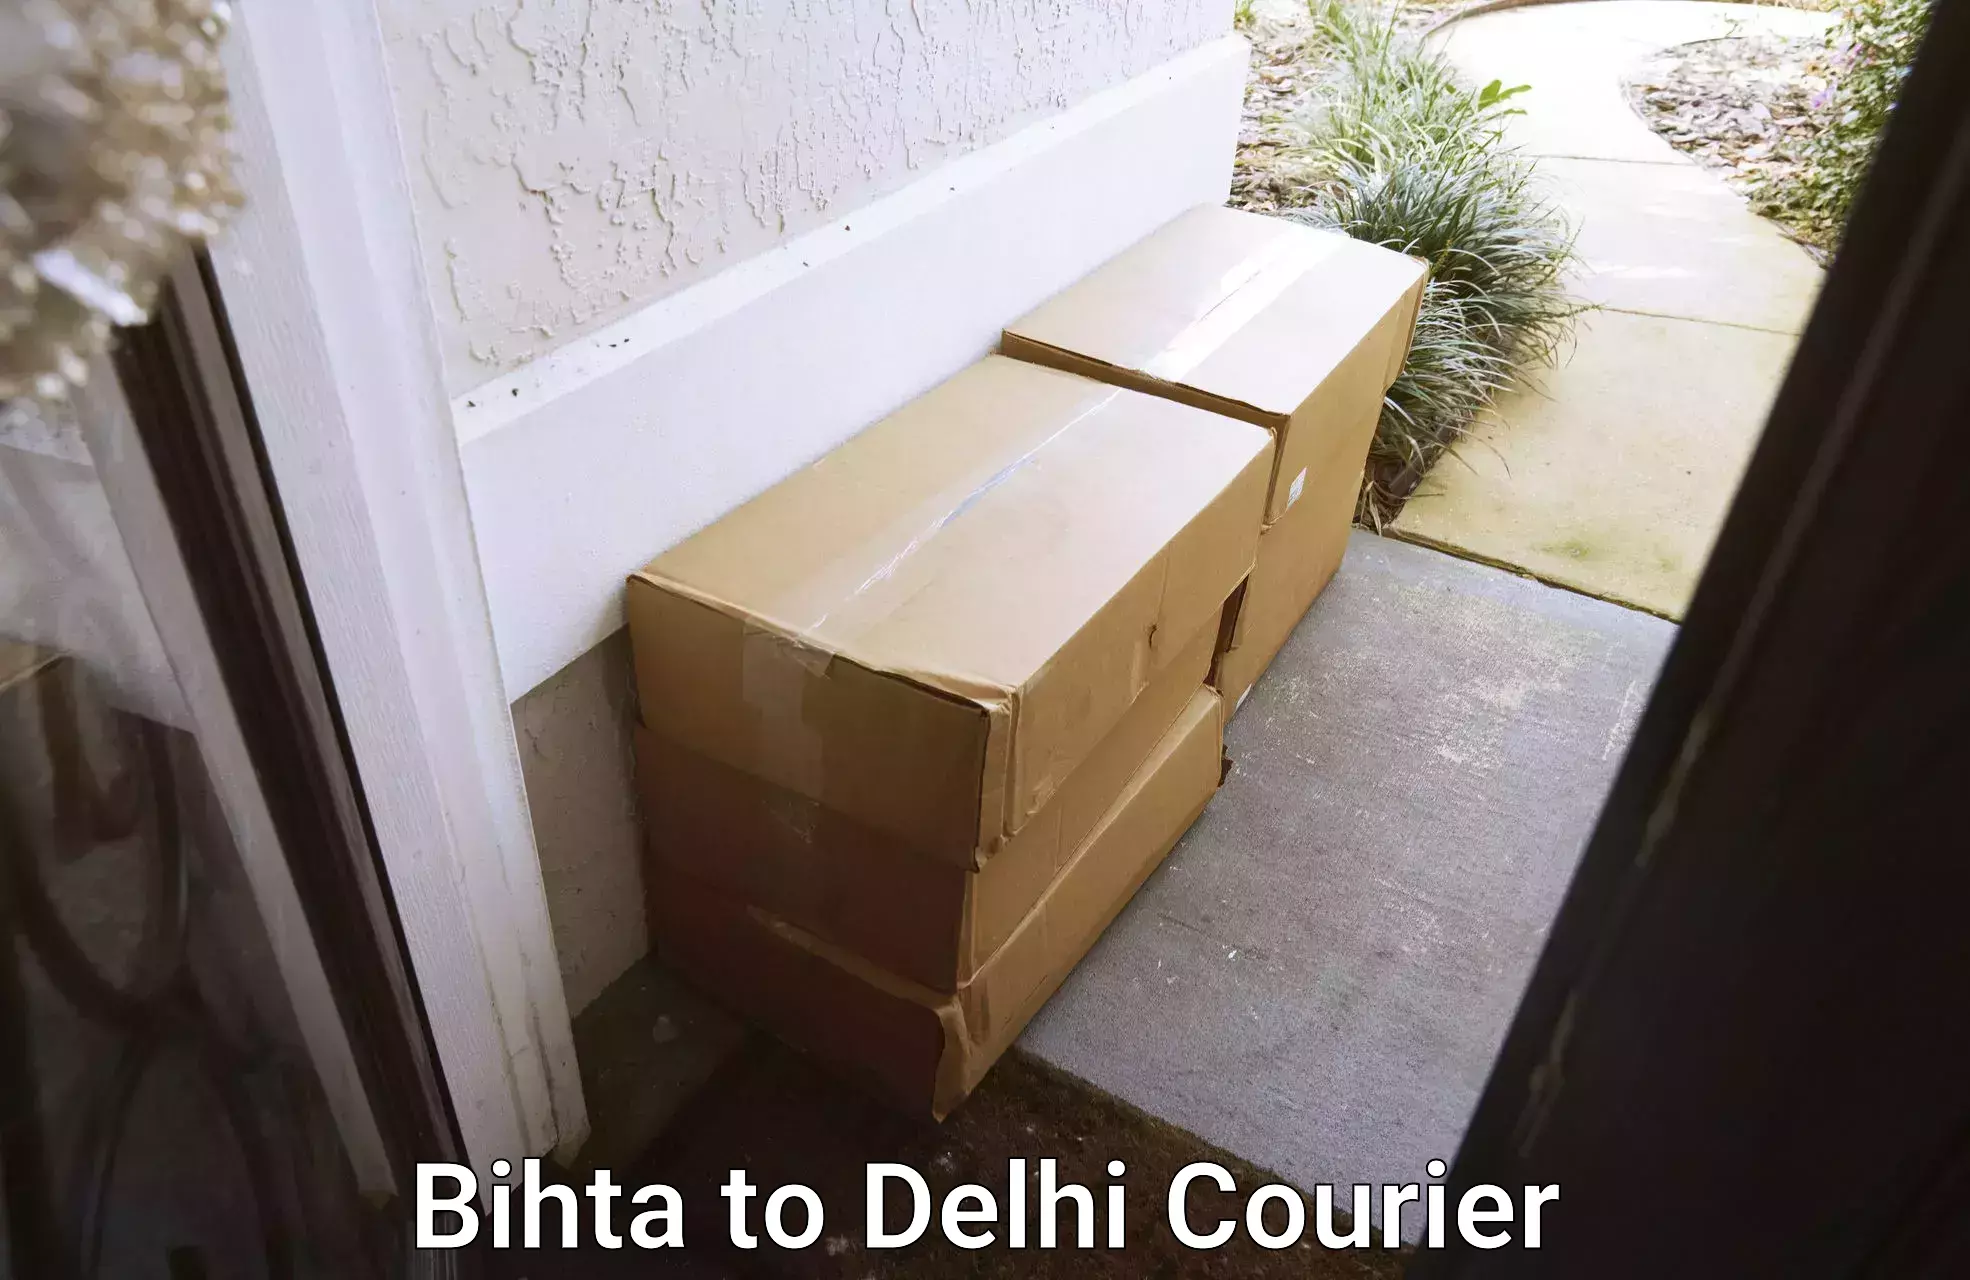 Efficient furniture relocation in Bihta to IIT Delhi